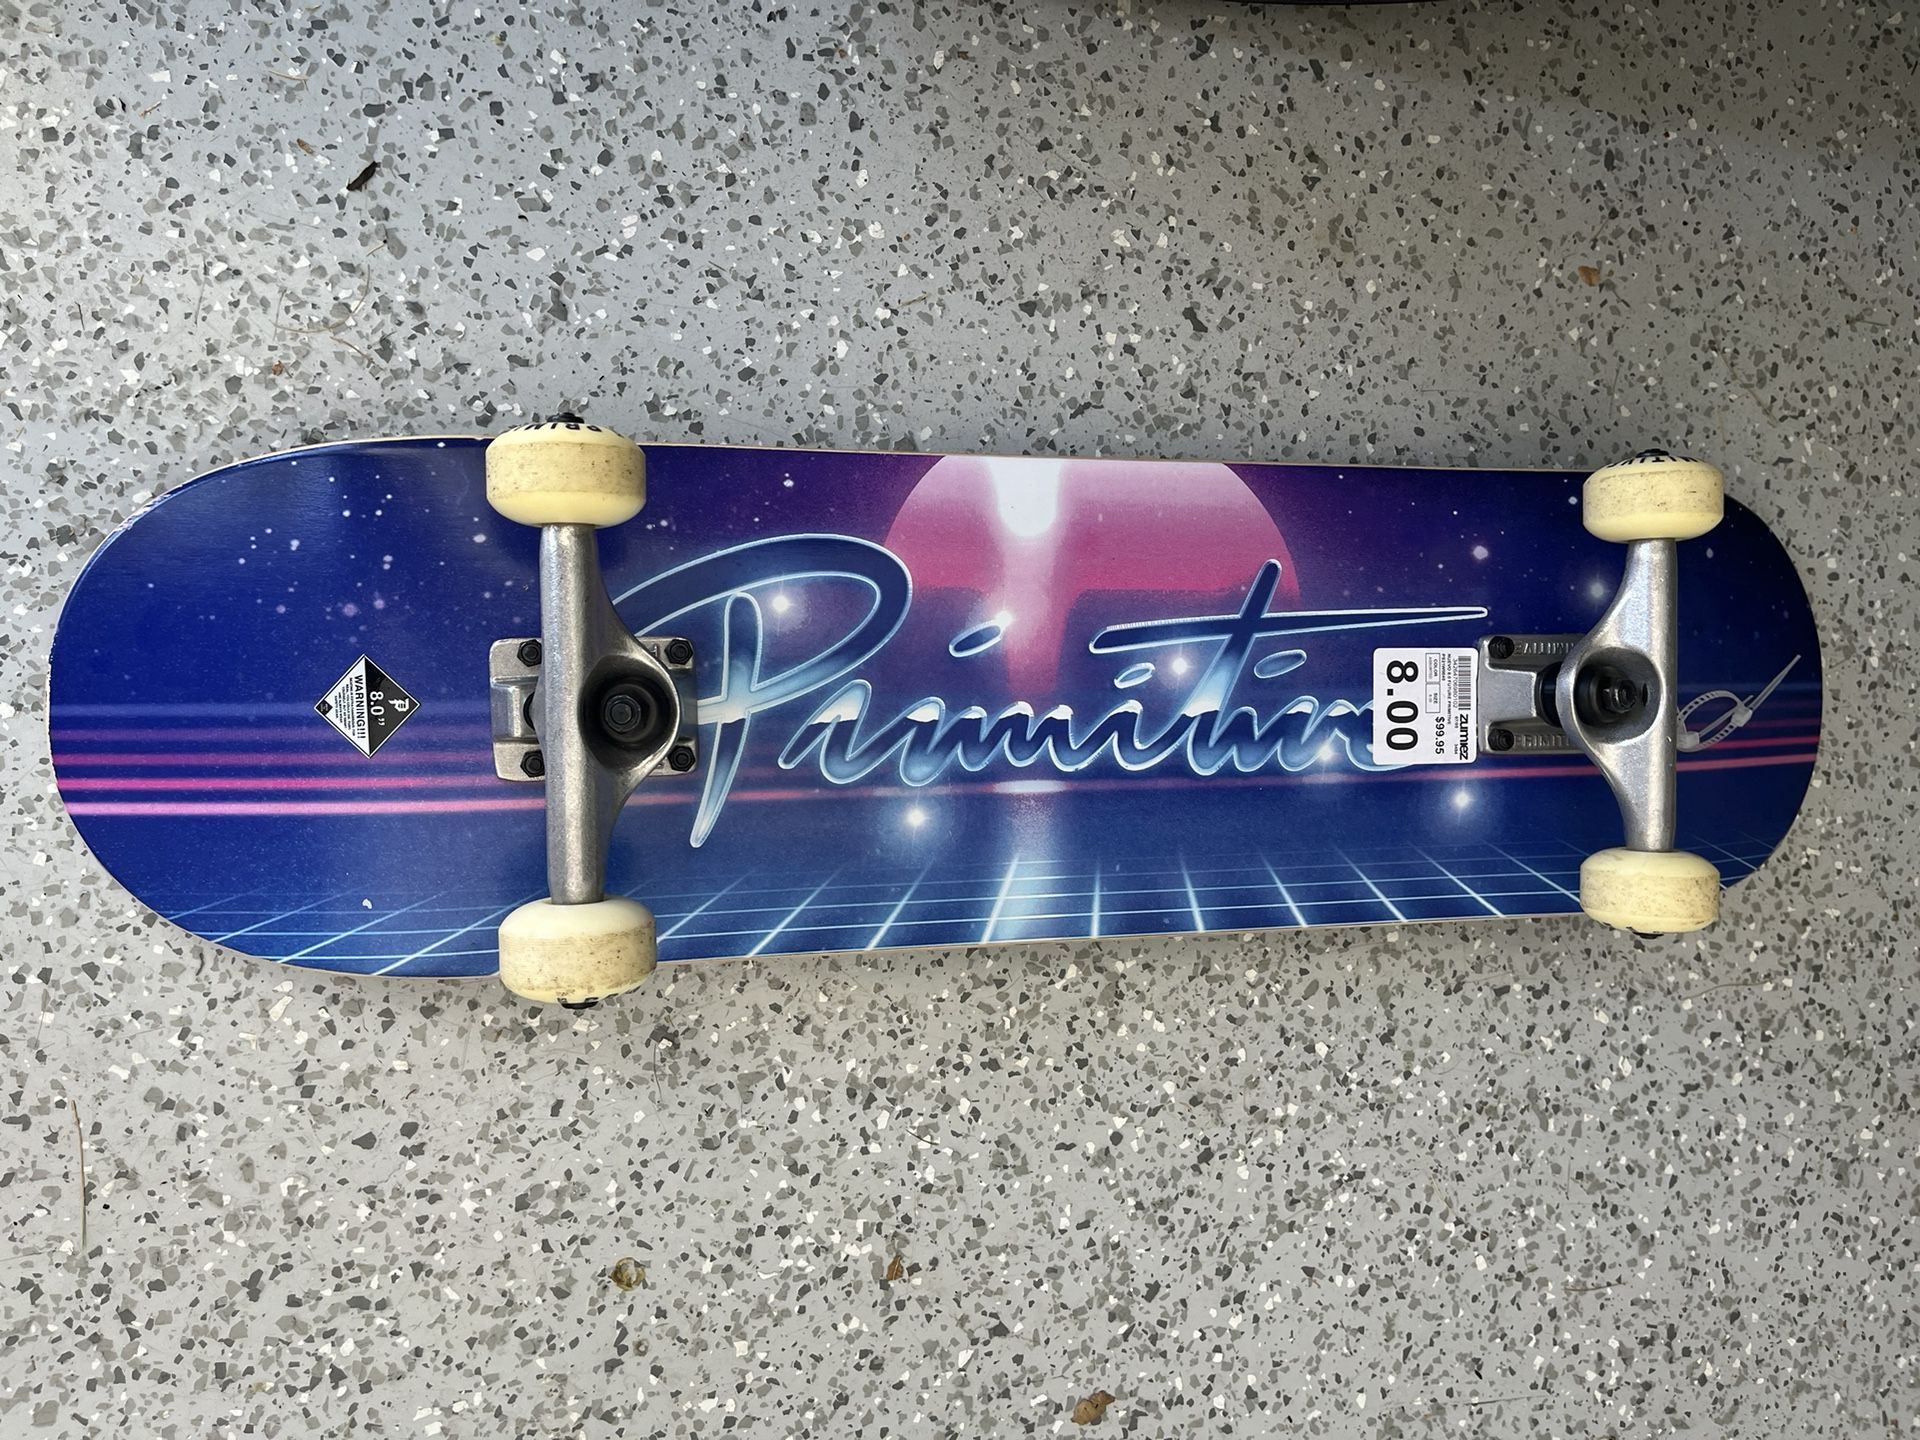 Primitive Skateboard